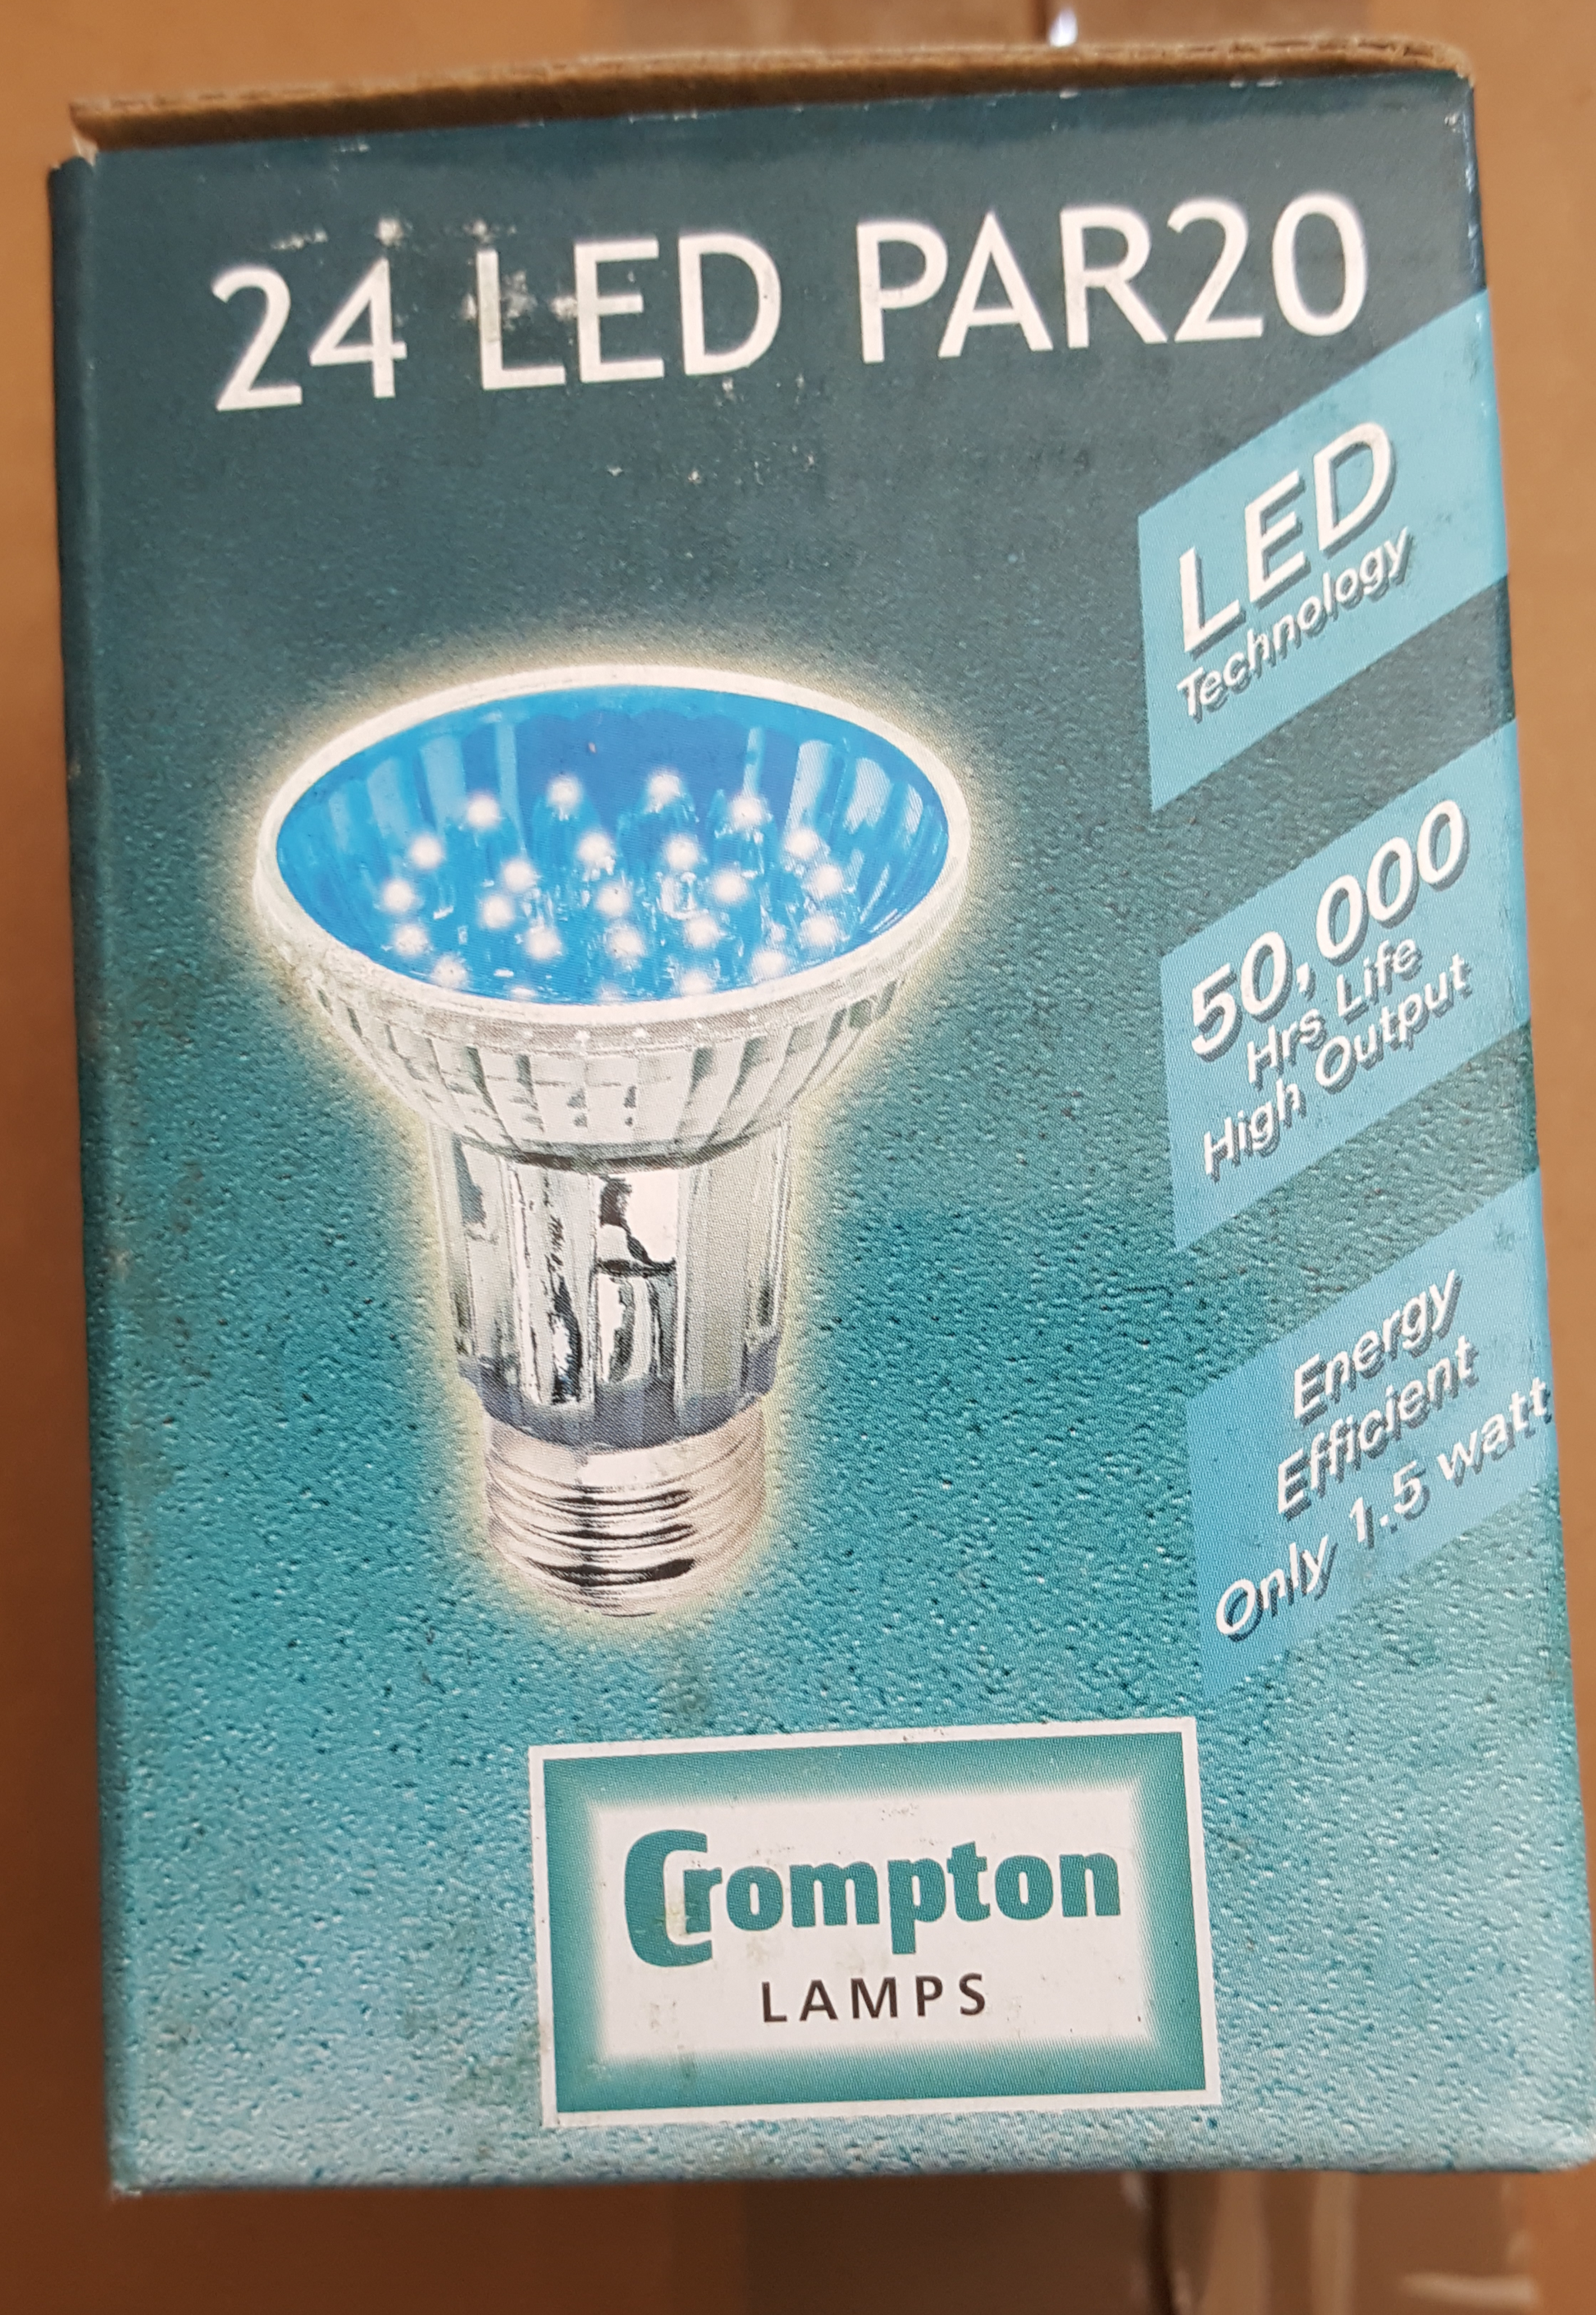 PAR20 LED Blue 1.5W ES/E27 - Beachcomber Lighting